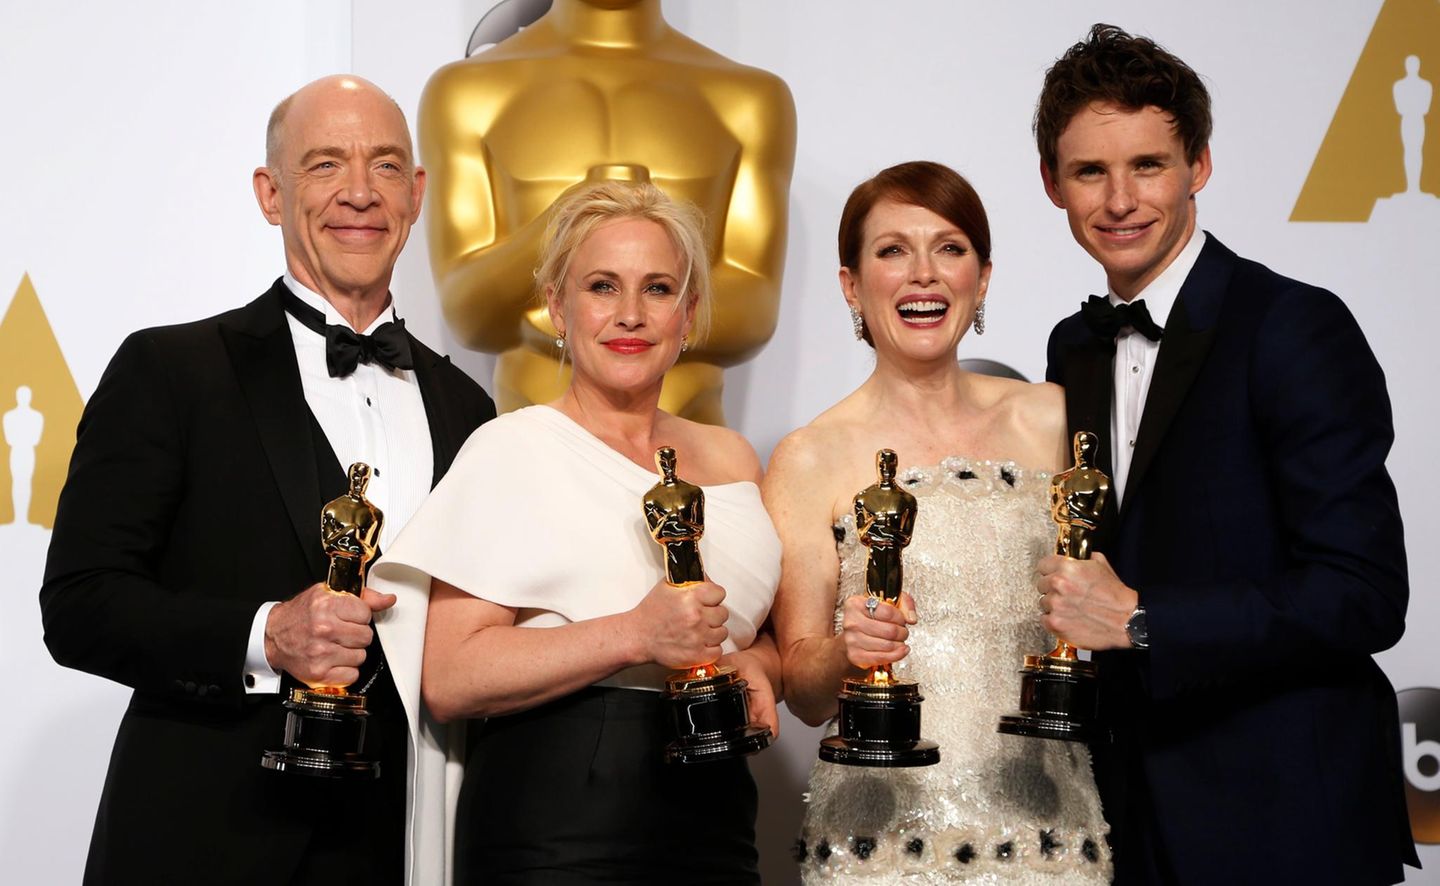 Die vier wichtigsten Gewinner auf einem Bild: Der "beste Nebendarsteller" J. K. Simmons, die "beste Nebendarstellerin" Patricia Arquette, die "beste Hauptdarstellerin" Julianne Moore und der "beste Hauptdarsteller" Eddie Redmayne freuen sich gemeinsam über ihre Preise.